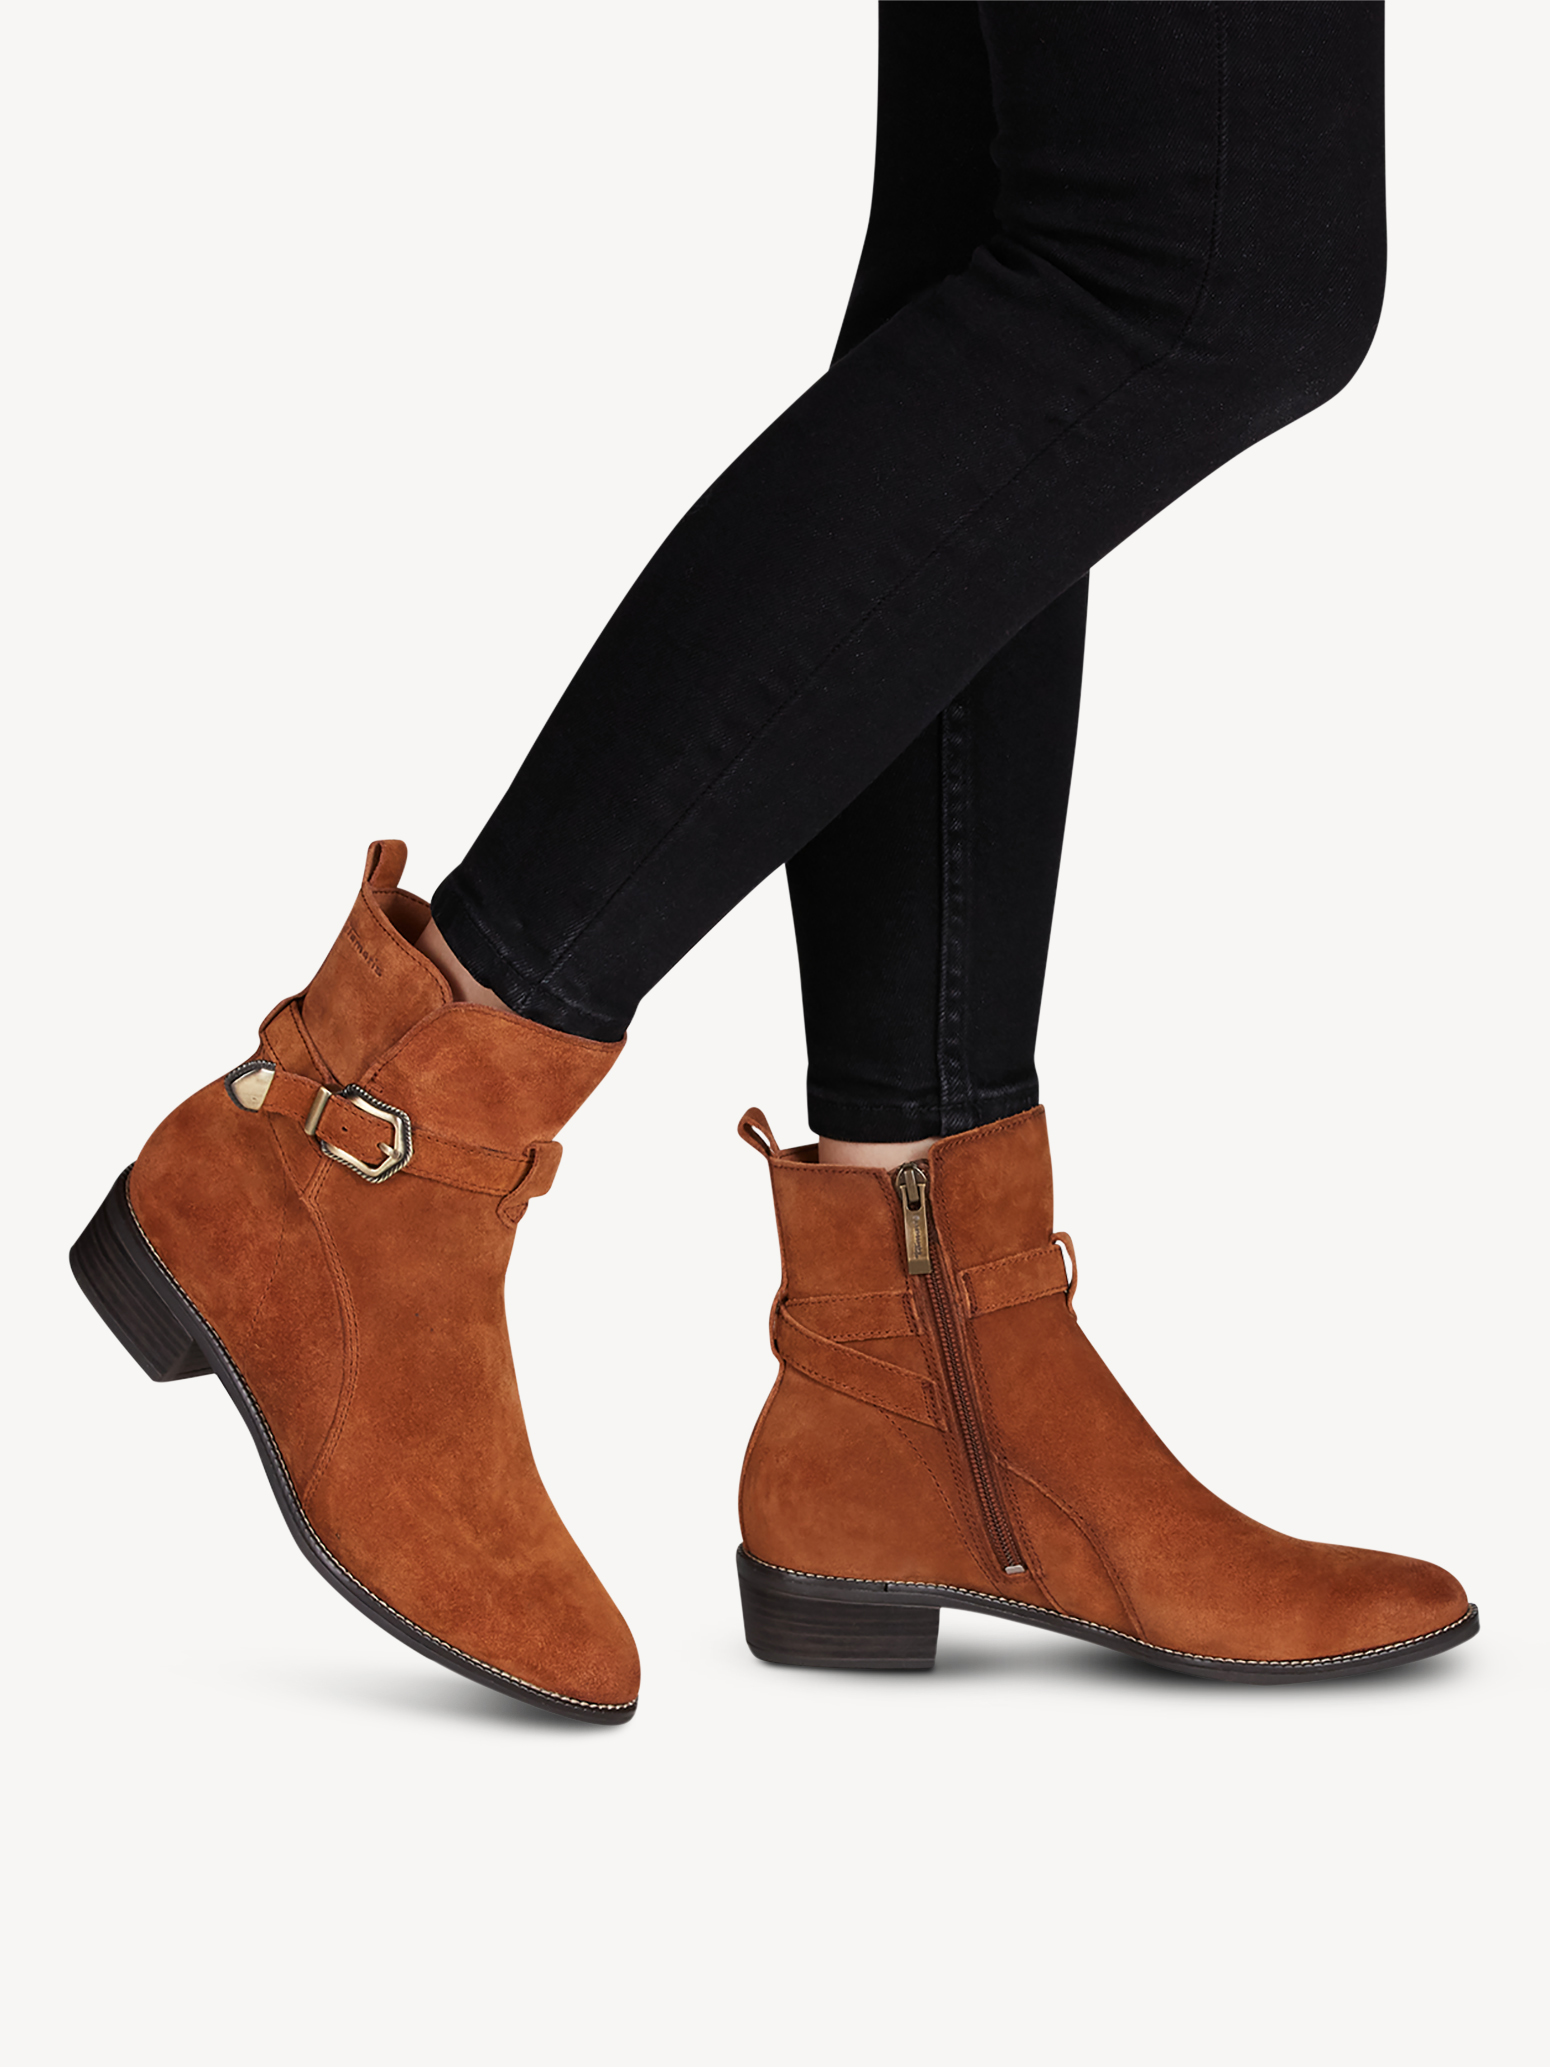 Ботинки женские 5 AW20 (коричневый) - изображение №1